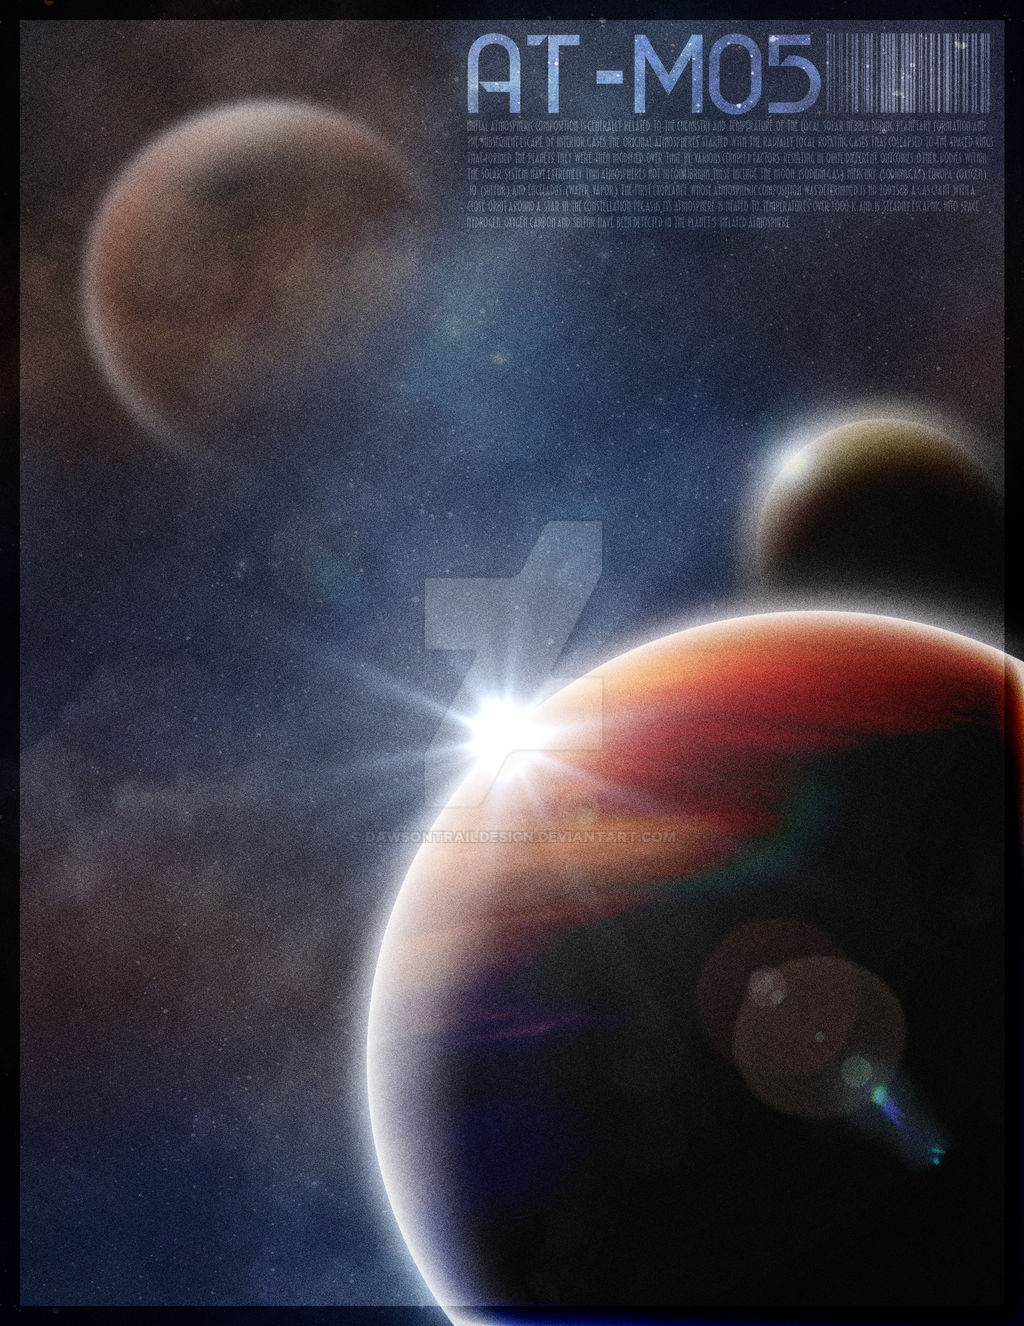 ATMOS - Planetary Exploration Series